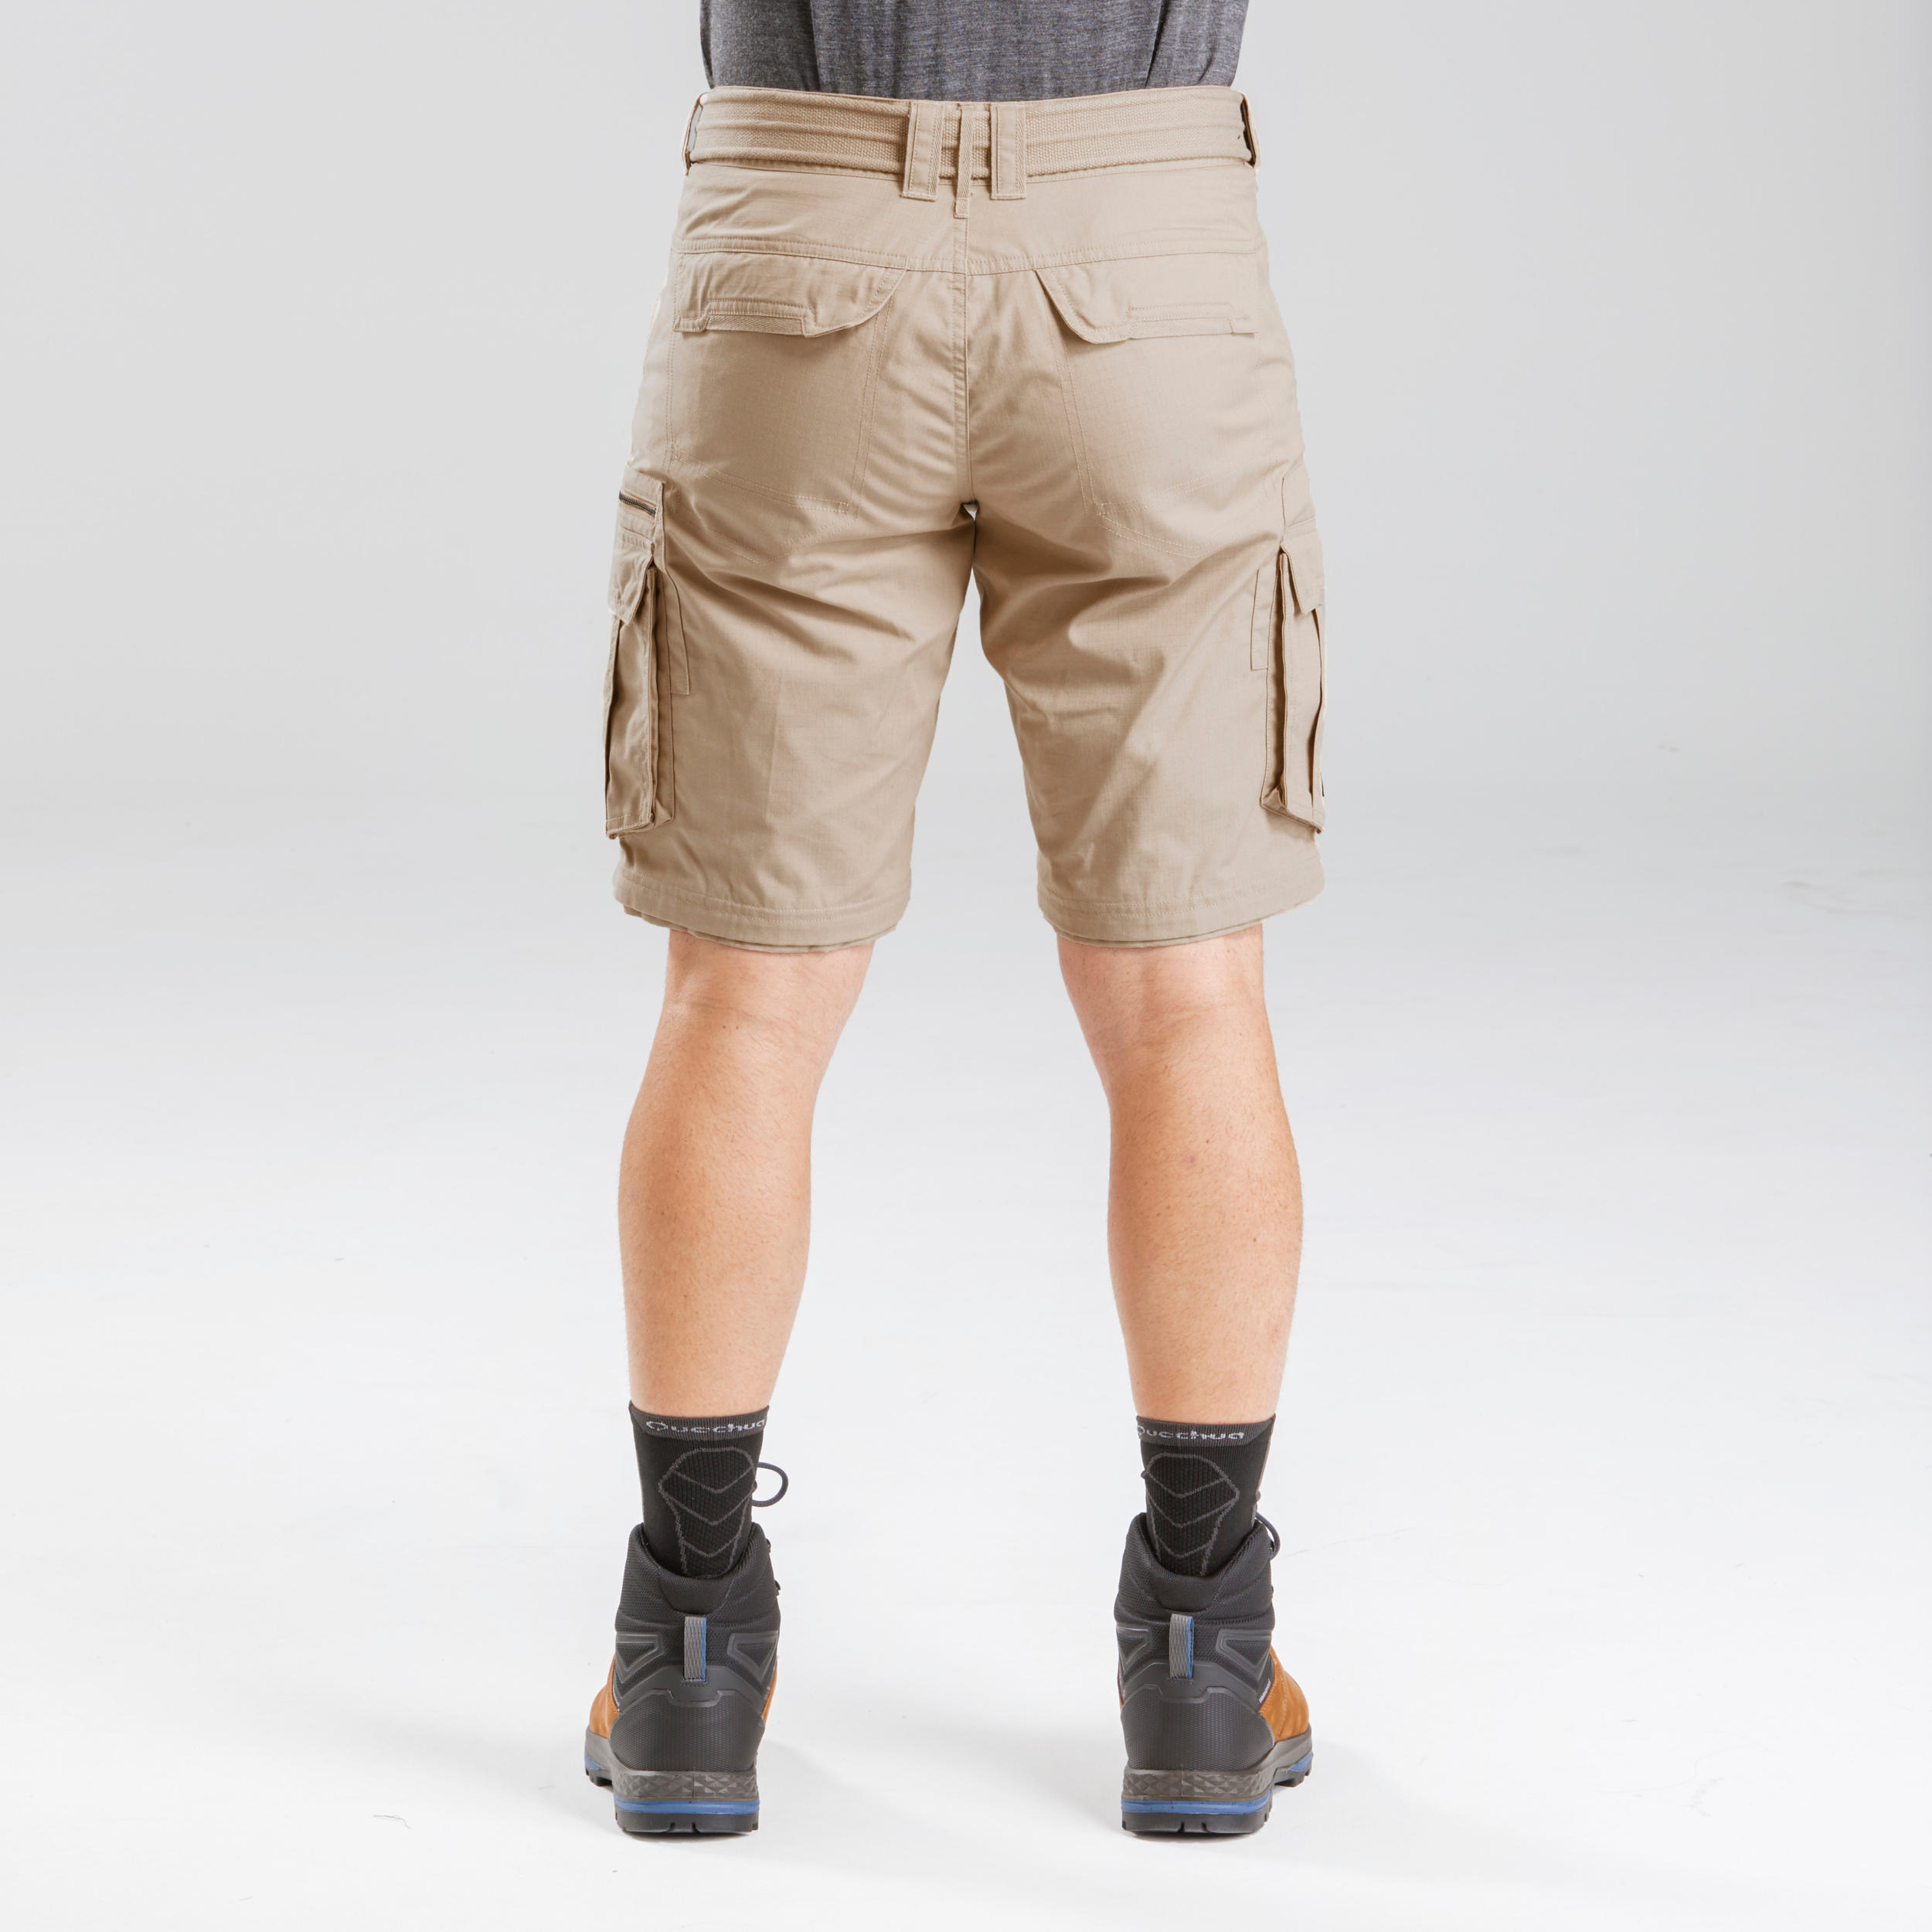 Men's Travel Trekking Zip-Off Cargo Trousers - Travel 100 Zip-Off - sand 5/10